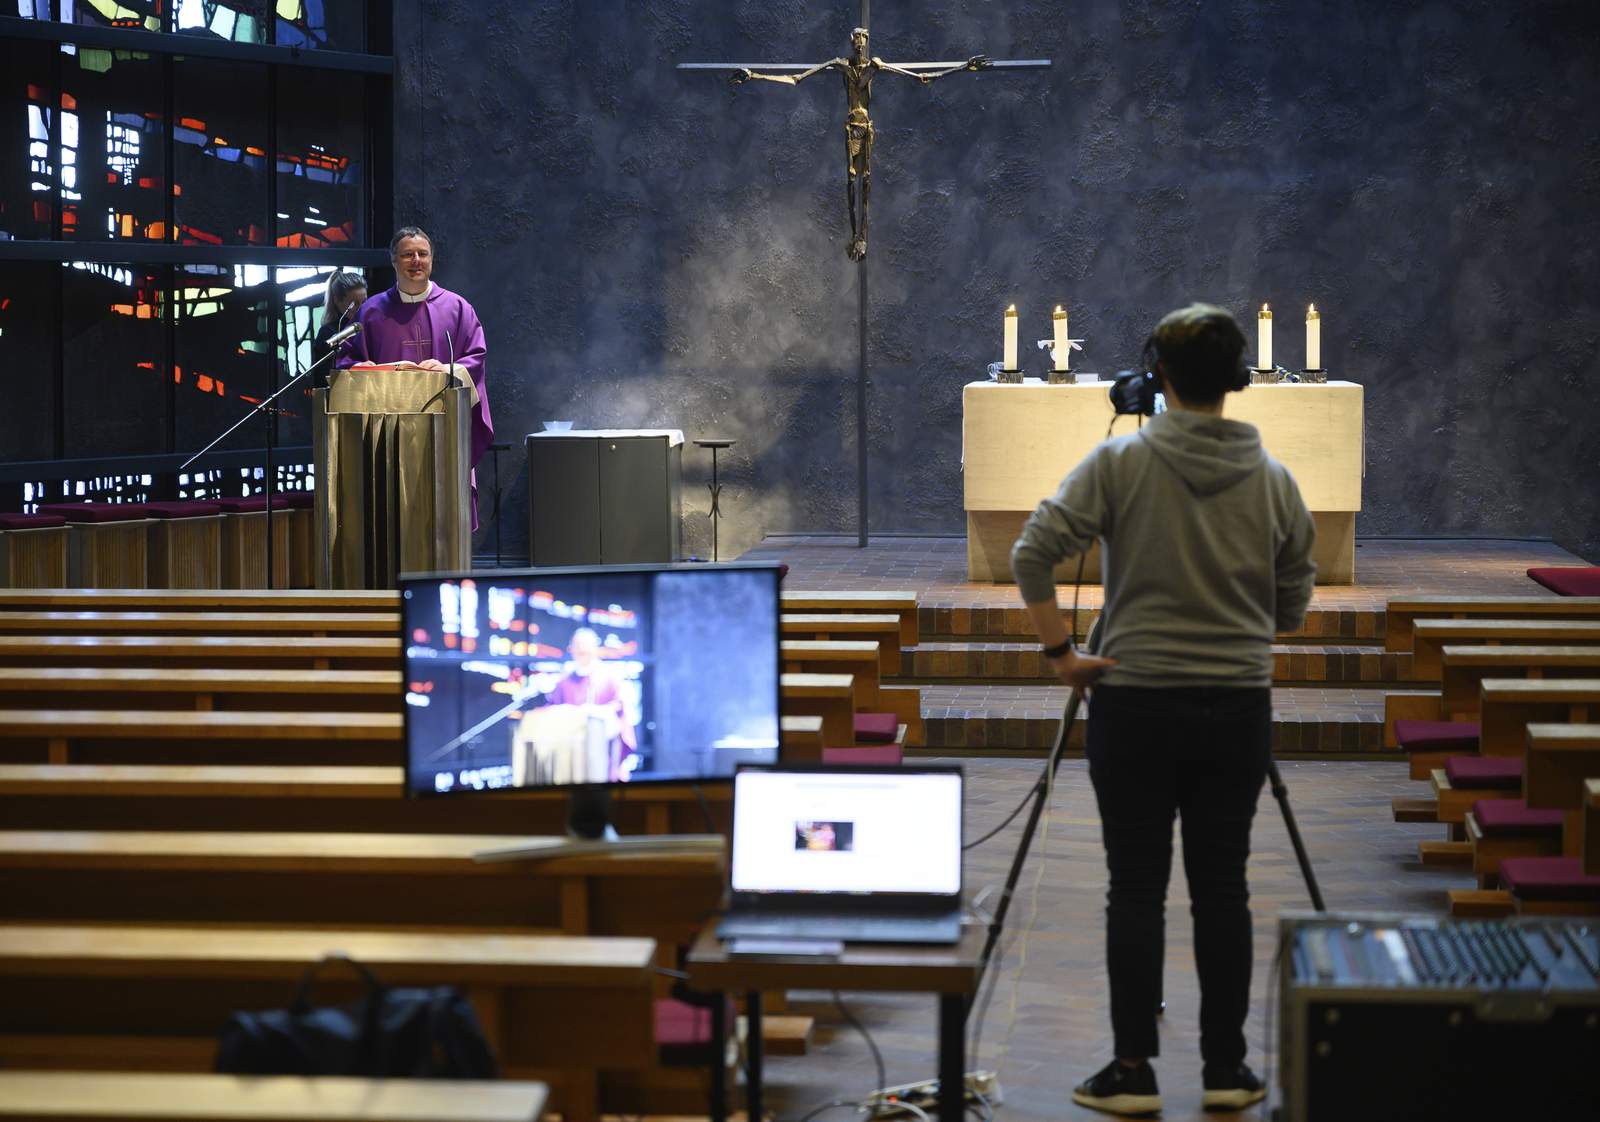 Catholic churches live stream fourth Sunday of Lent Mass